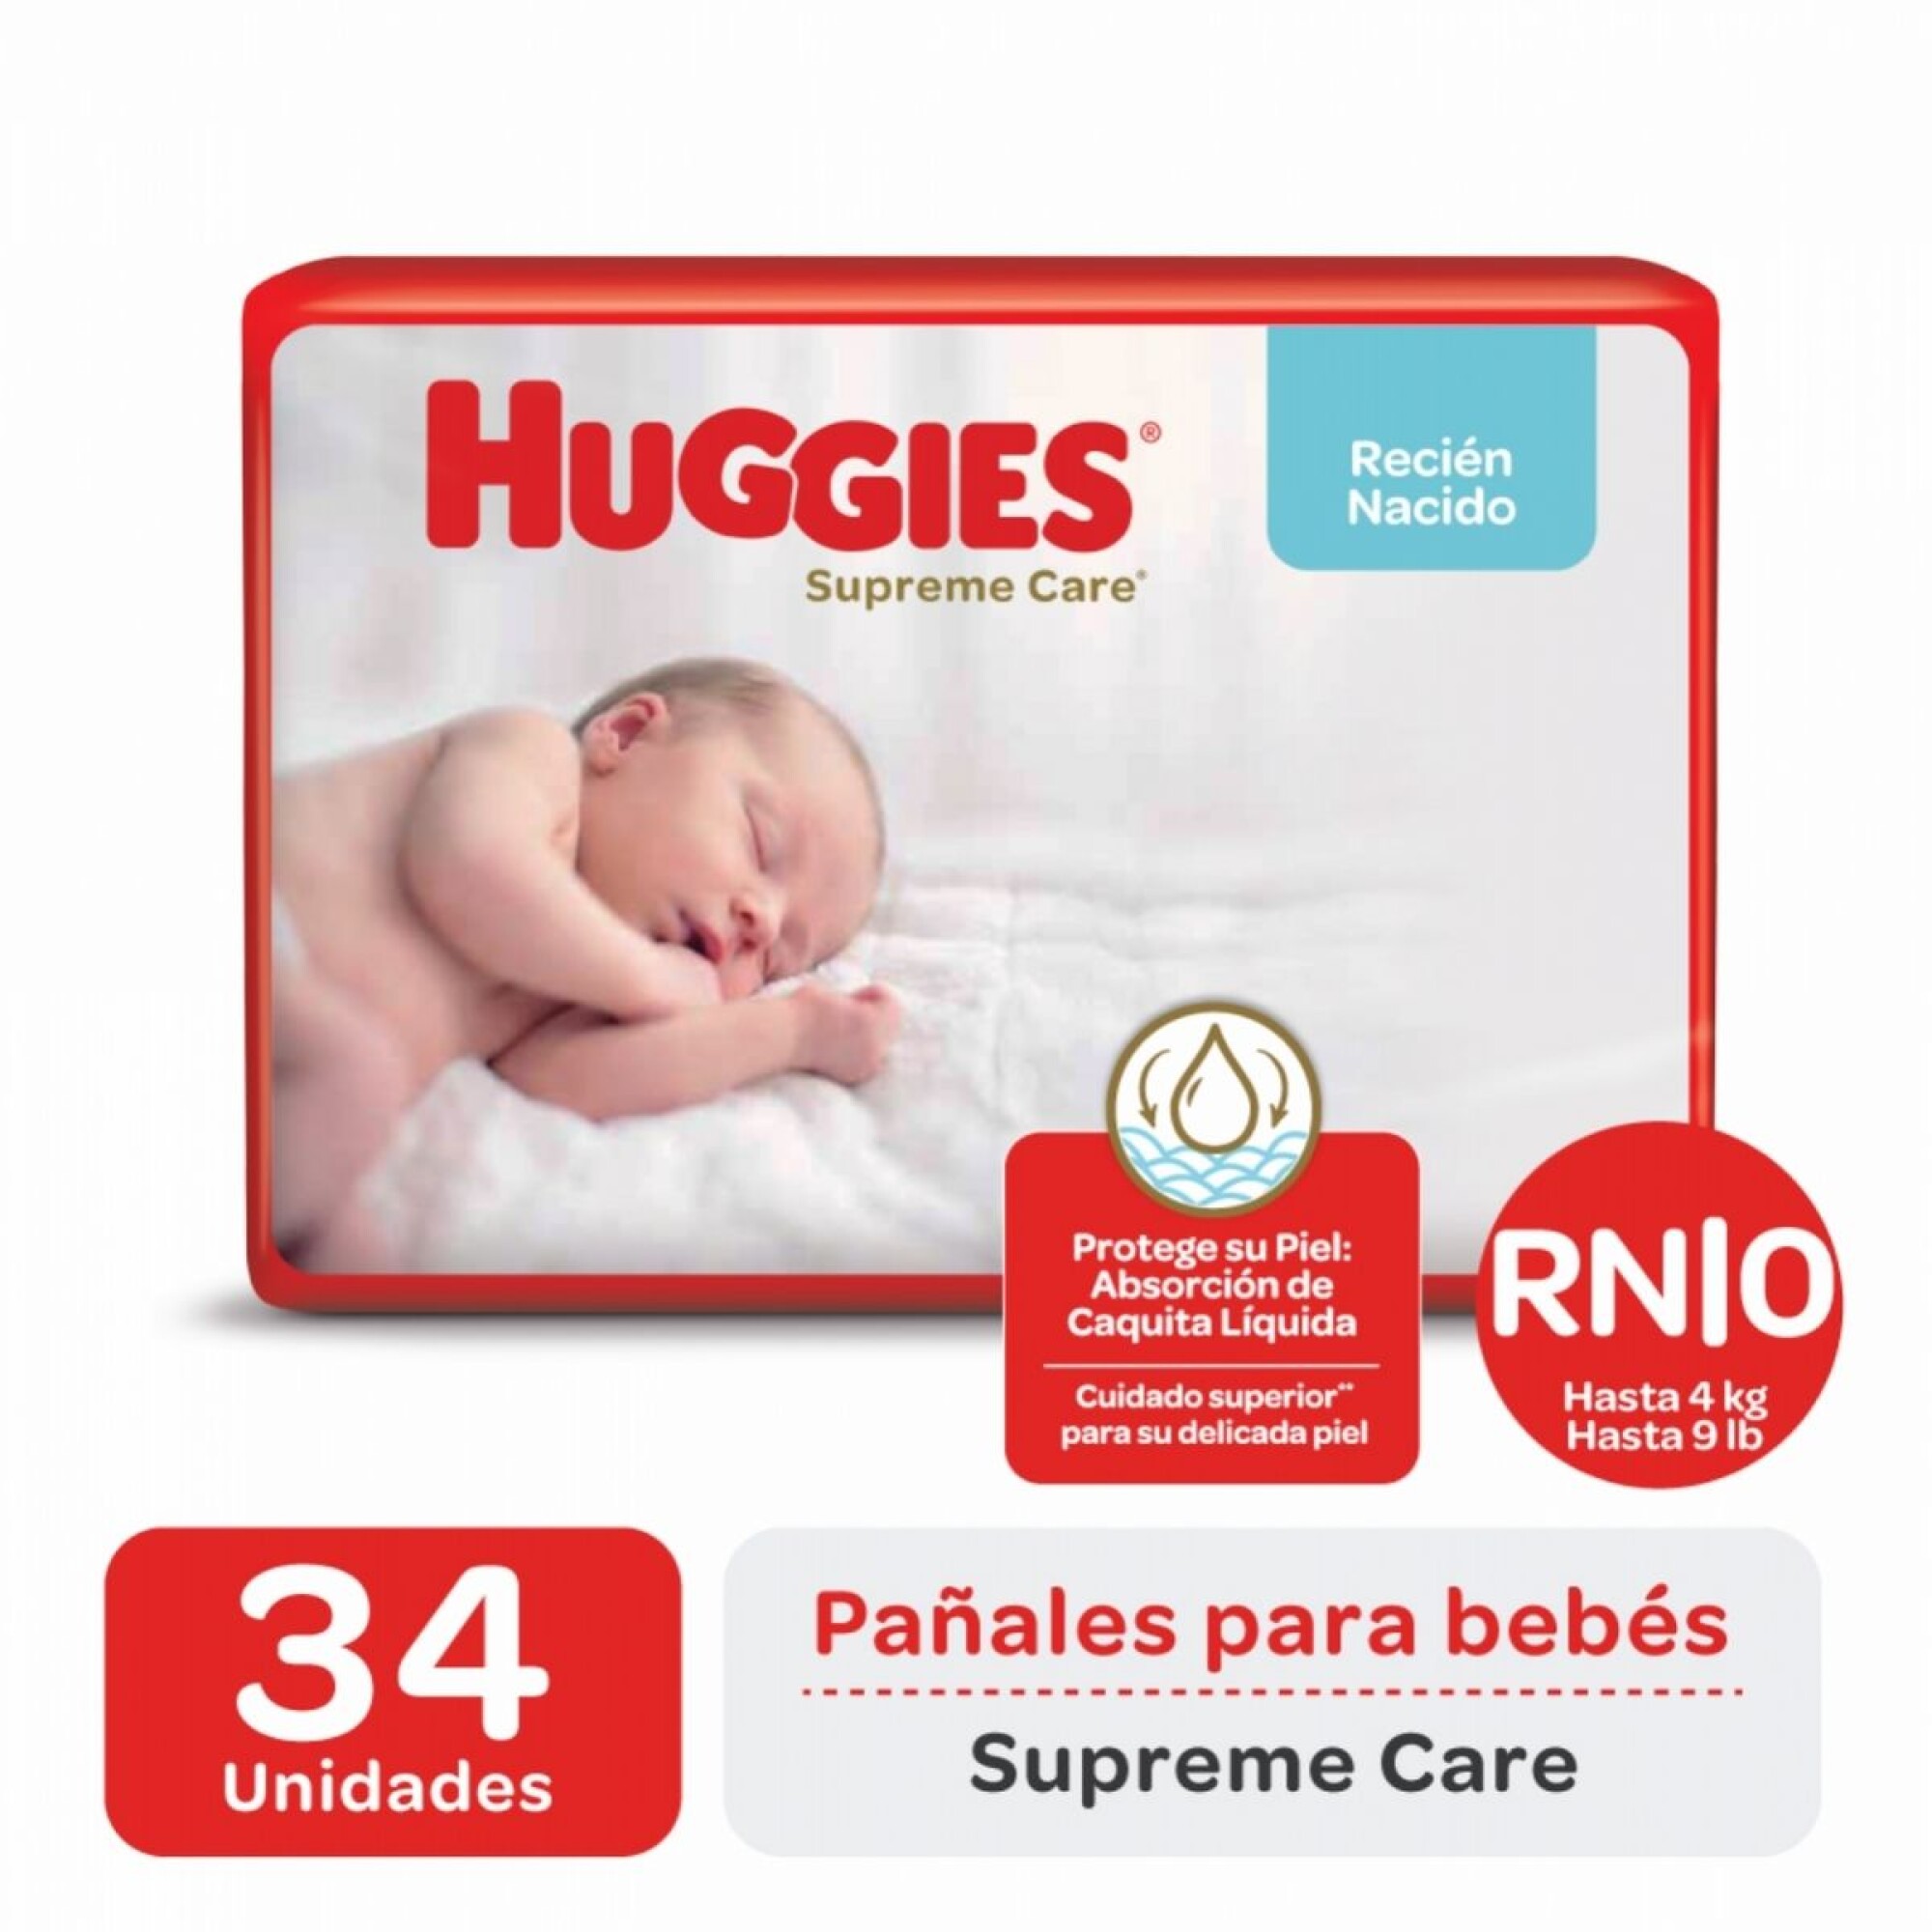 Pañales marca Huggies UltraConfort para Recién Nacido